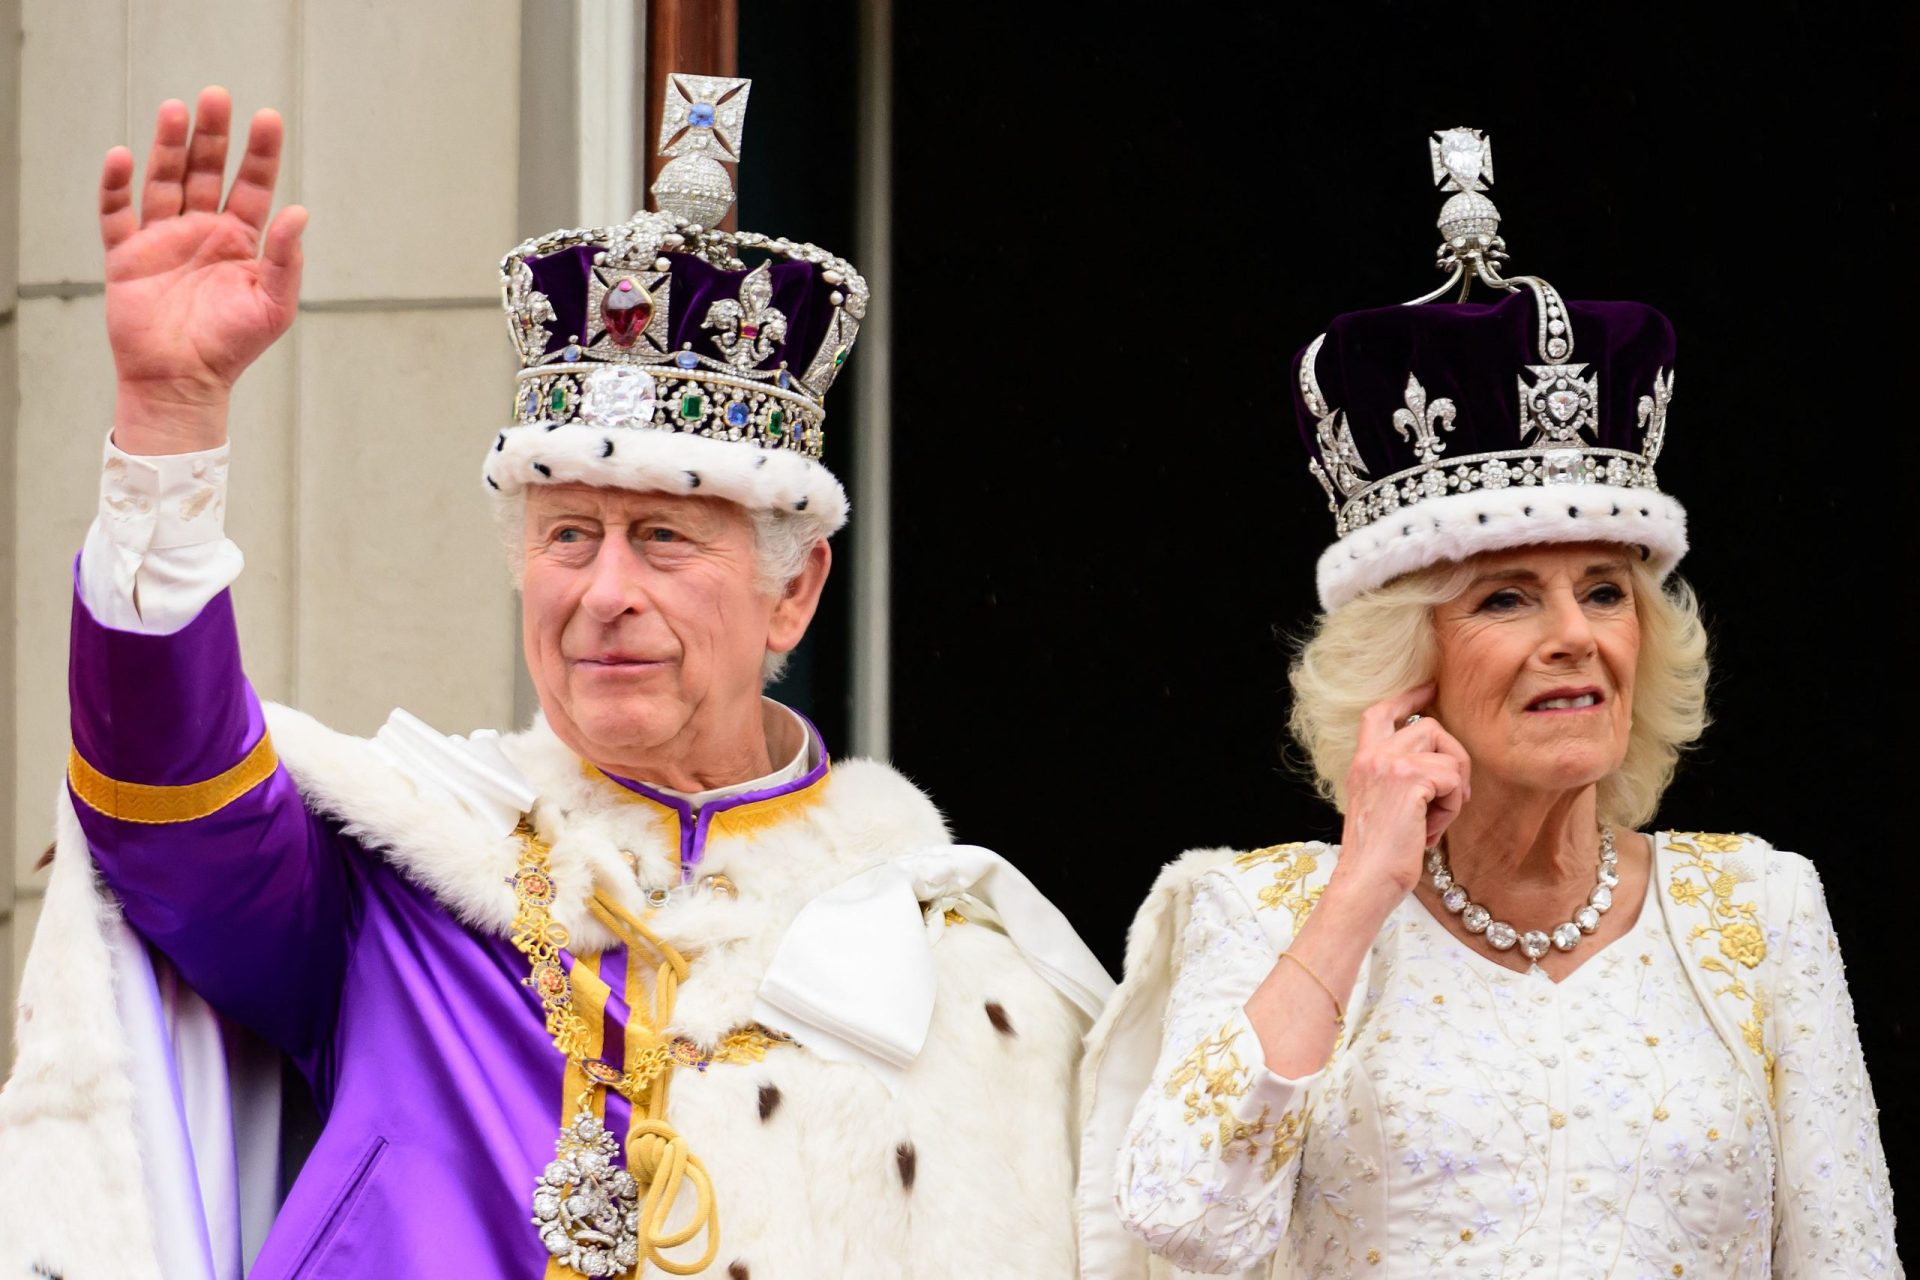 Divulgada nas redes sociais a primeira fotografia oficial do Rei Carlos III